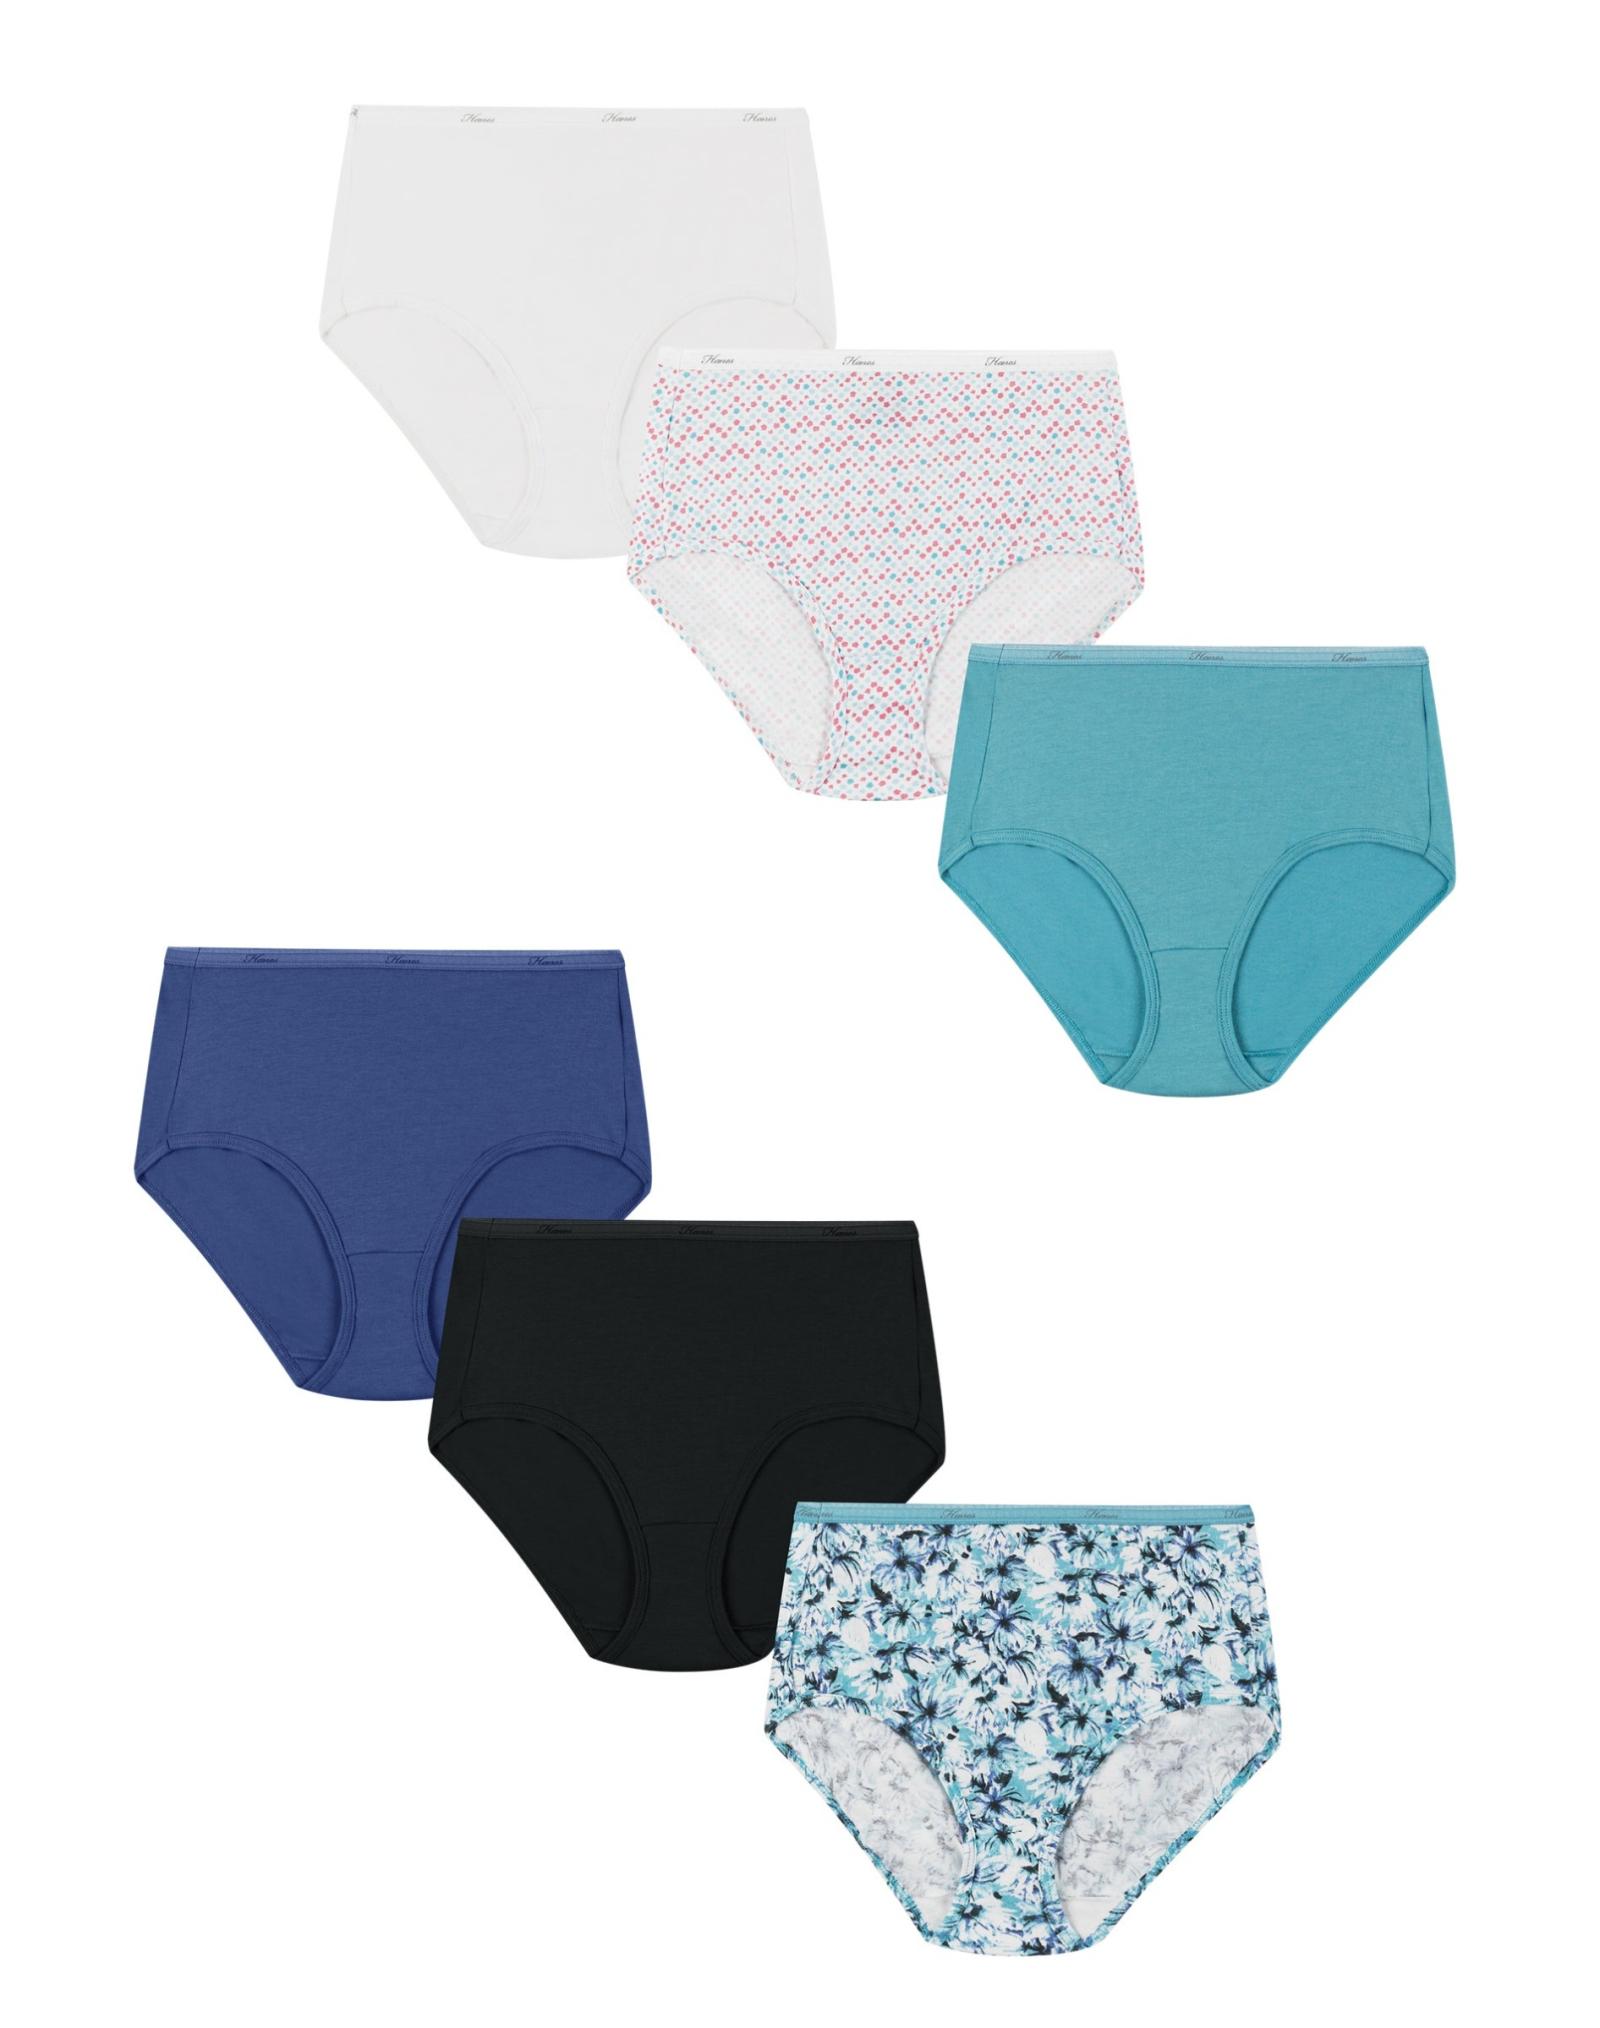 Hanes Women's Cool Comfort Cotton Brief Panties, 6 PK